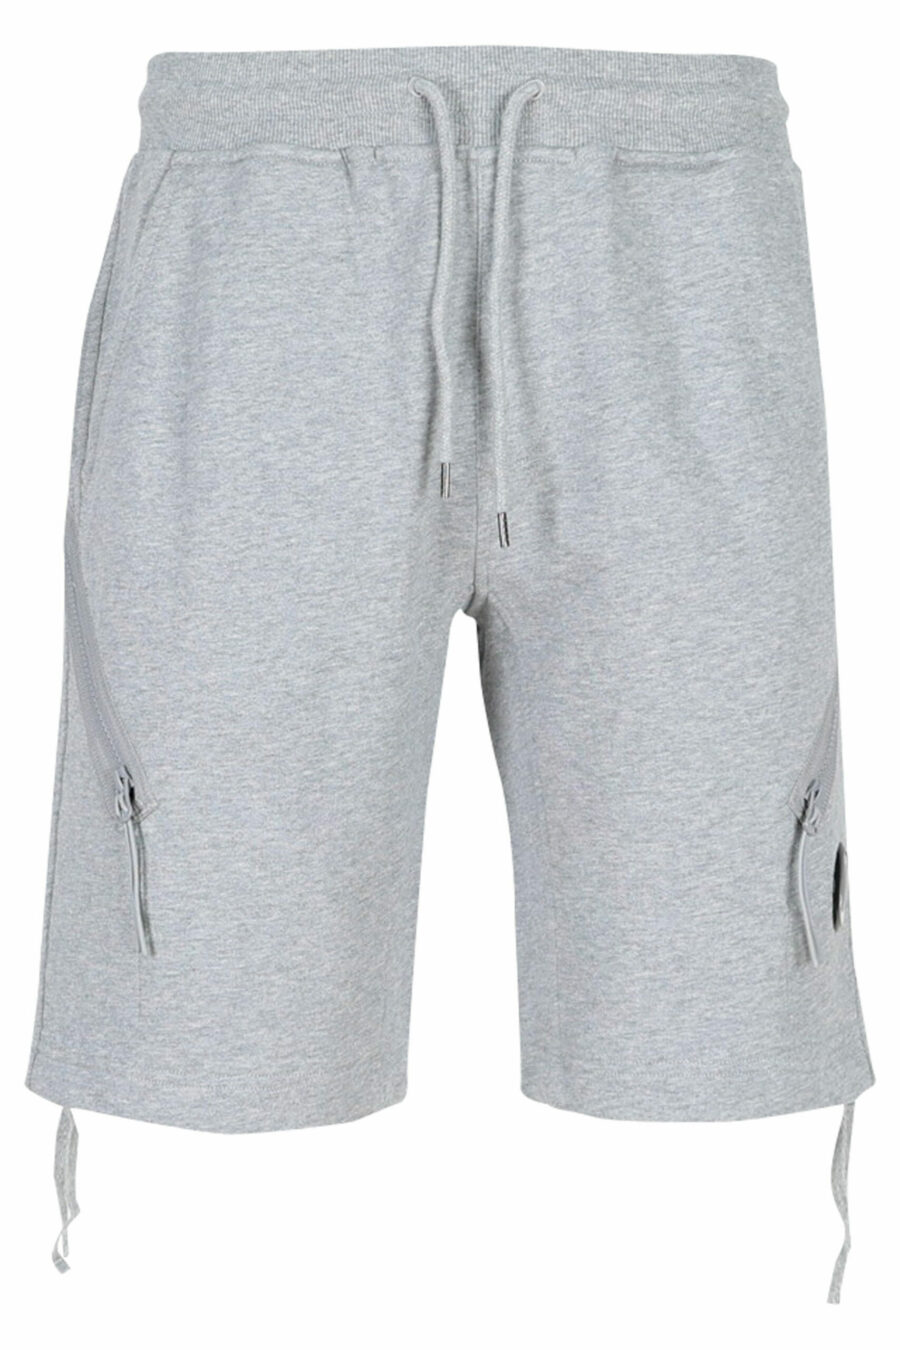 Pantalón corto gris estilo cargo - 7620943626070 scaled